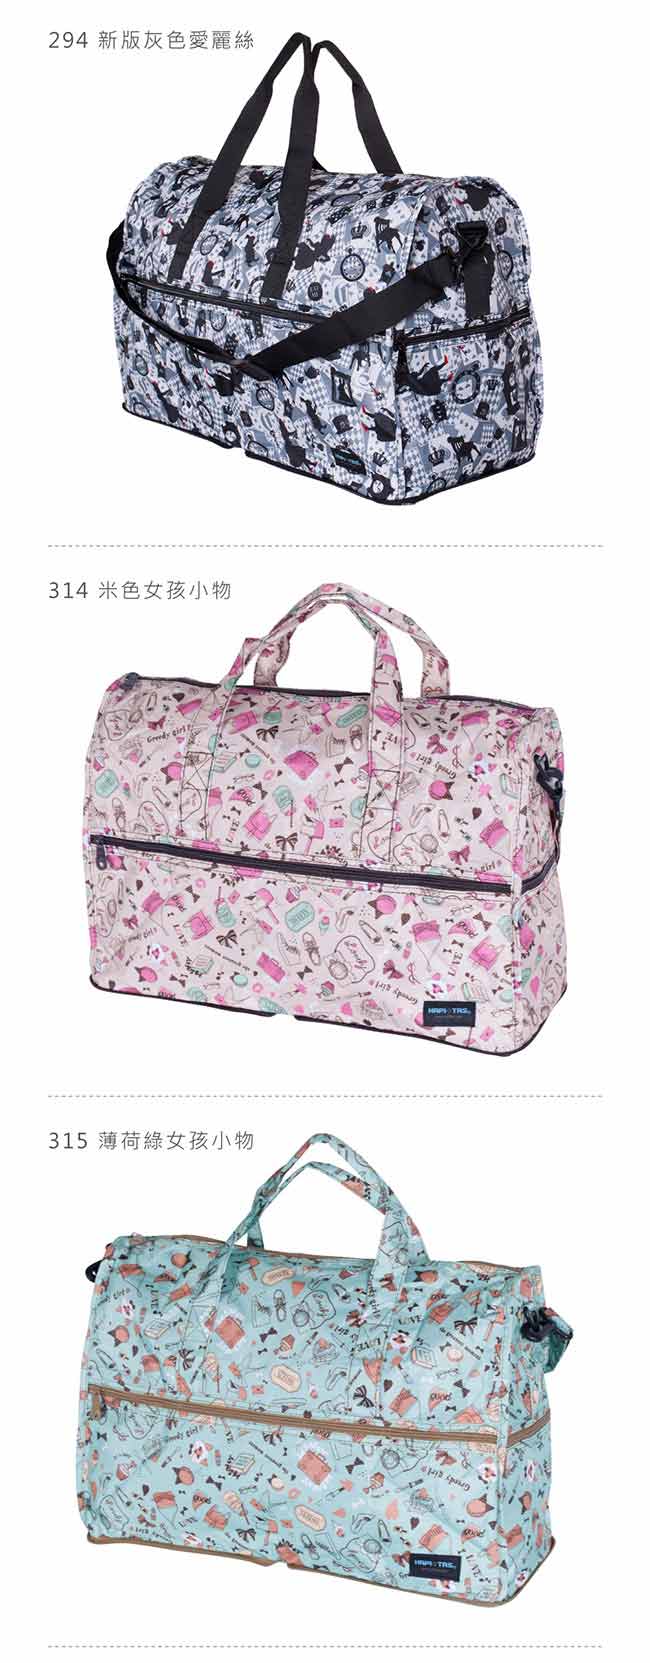 【HAPI+TAS】女孩小物折疊旅行袋(大)-薄荷綠